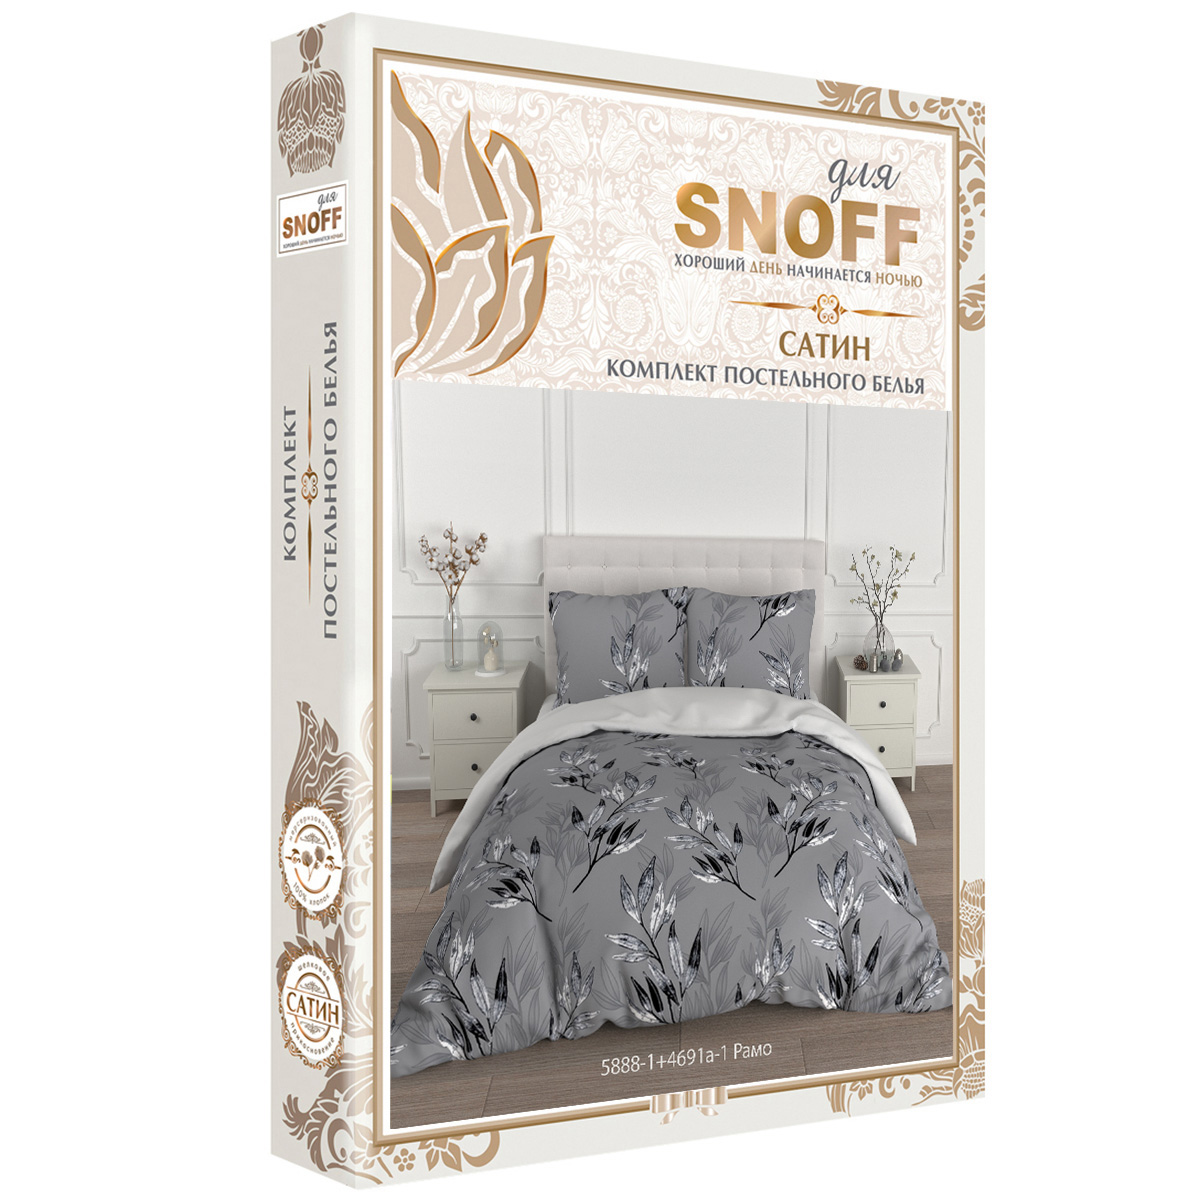 Комплект постельного белья для SNOFF Рамо евро сатин - фото 7